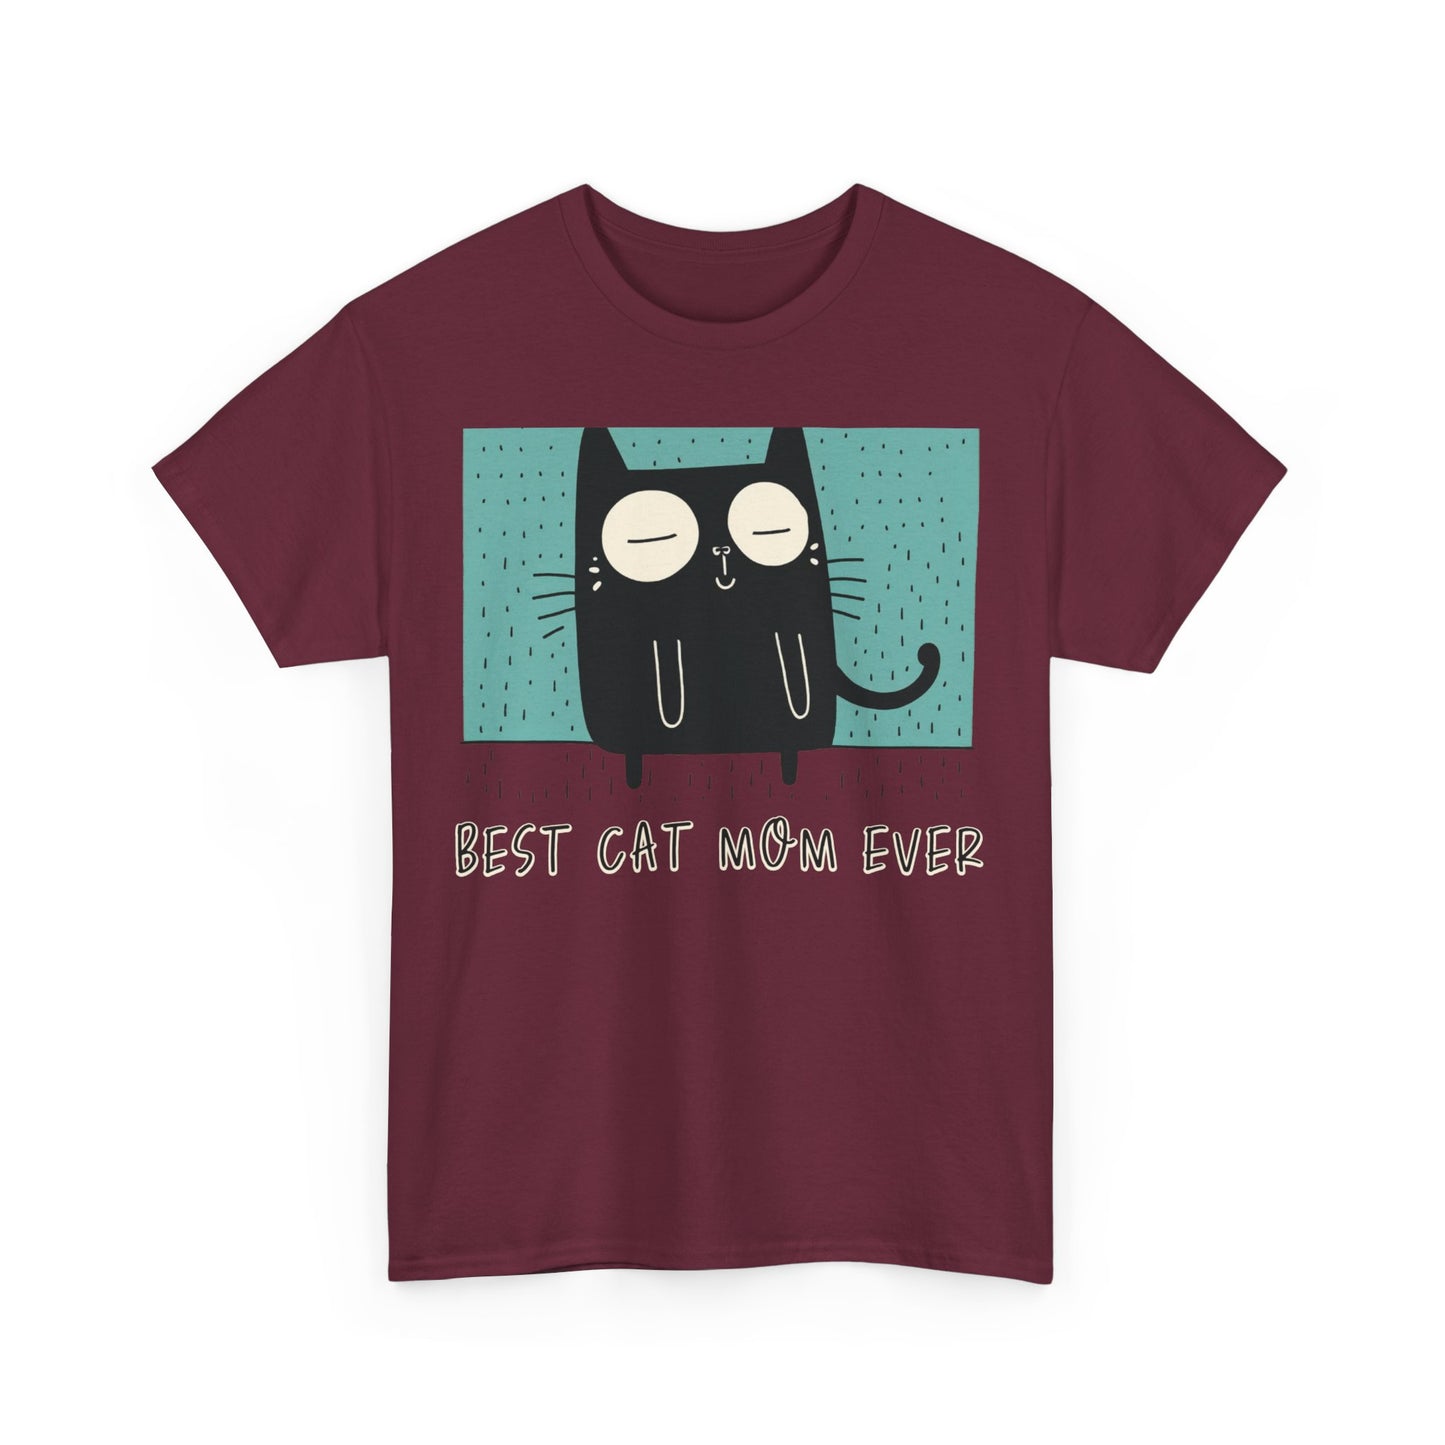 BEST Cat Mom T shirt